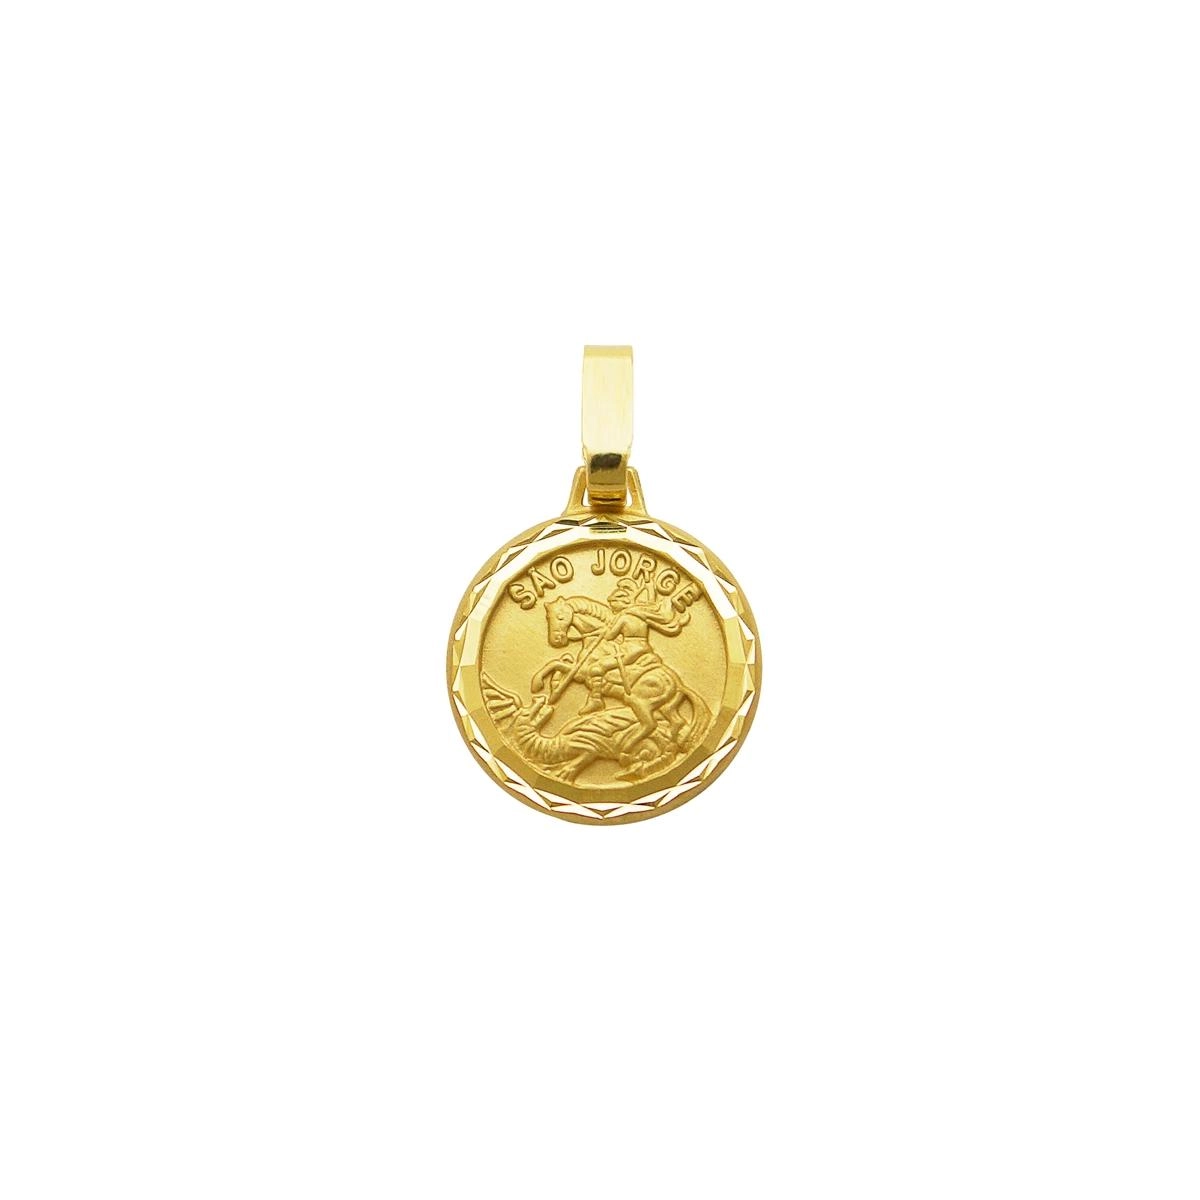 Pingente Ouro 18k Medalha São Jorge 0.95 gramas